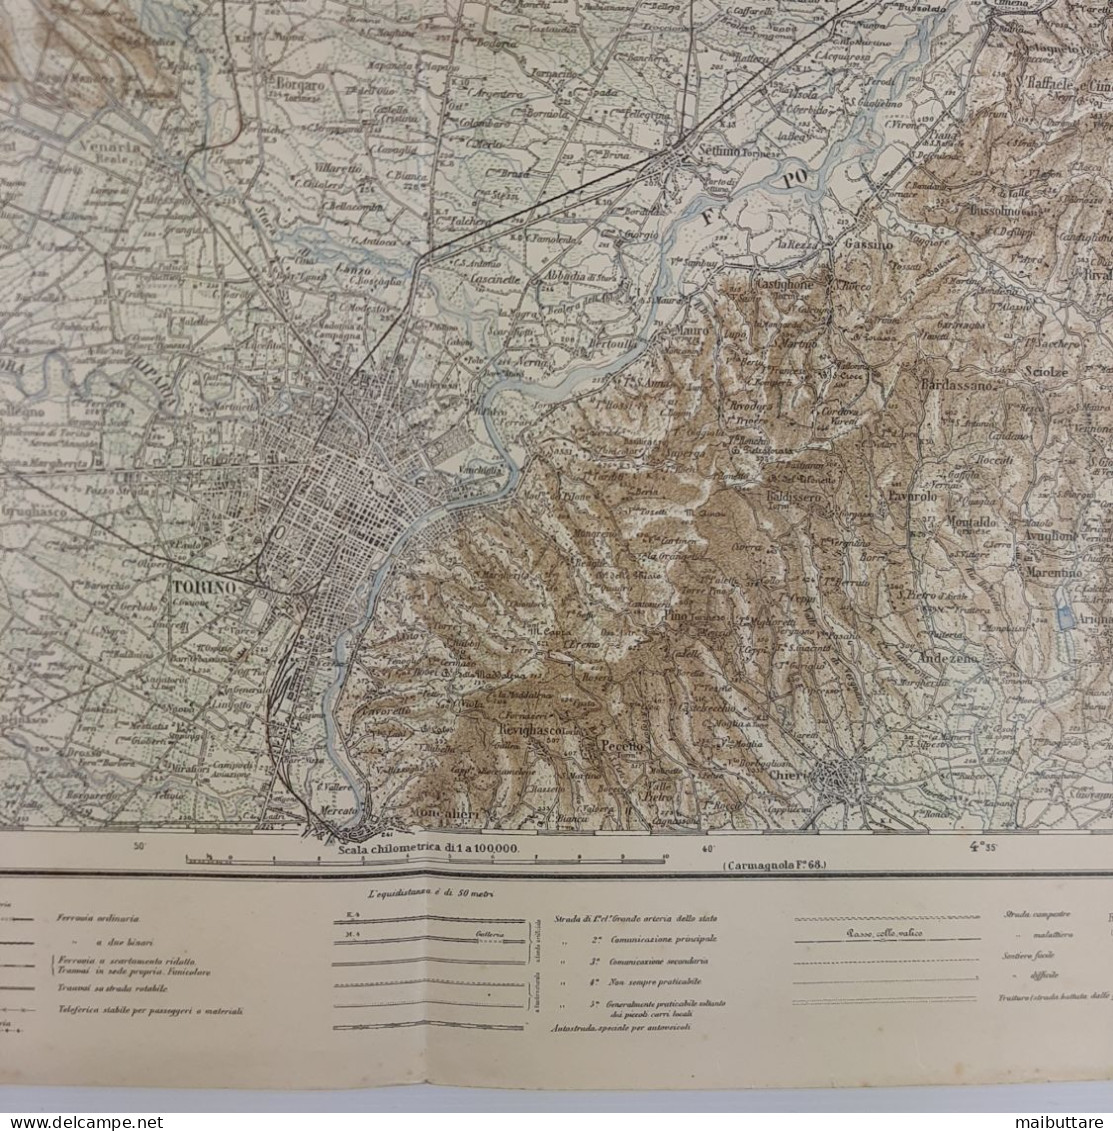 Carta Geografica, Cartina Mappa Militare Torino Piemonte F56 Della Carta D'Italia Scala 1:25.000 - Landkarten